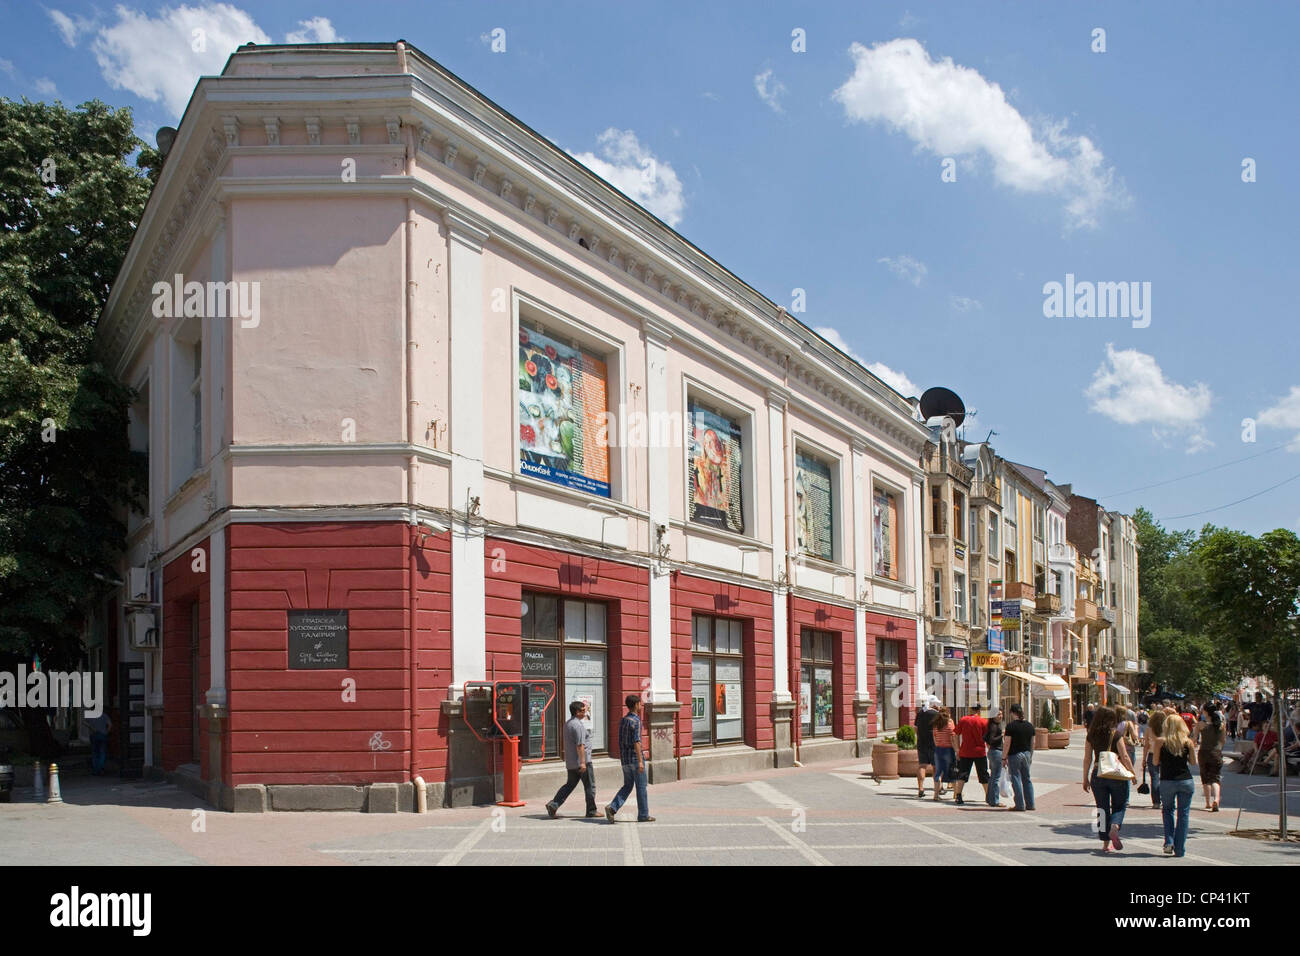 Bulgaria - Plovdiv. La construcción a lo largo de la calle con el nombre de Alexander I, príncipe de Bulgaria Foto de stock